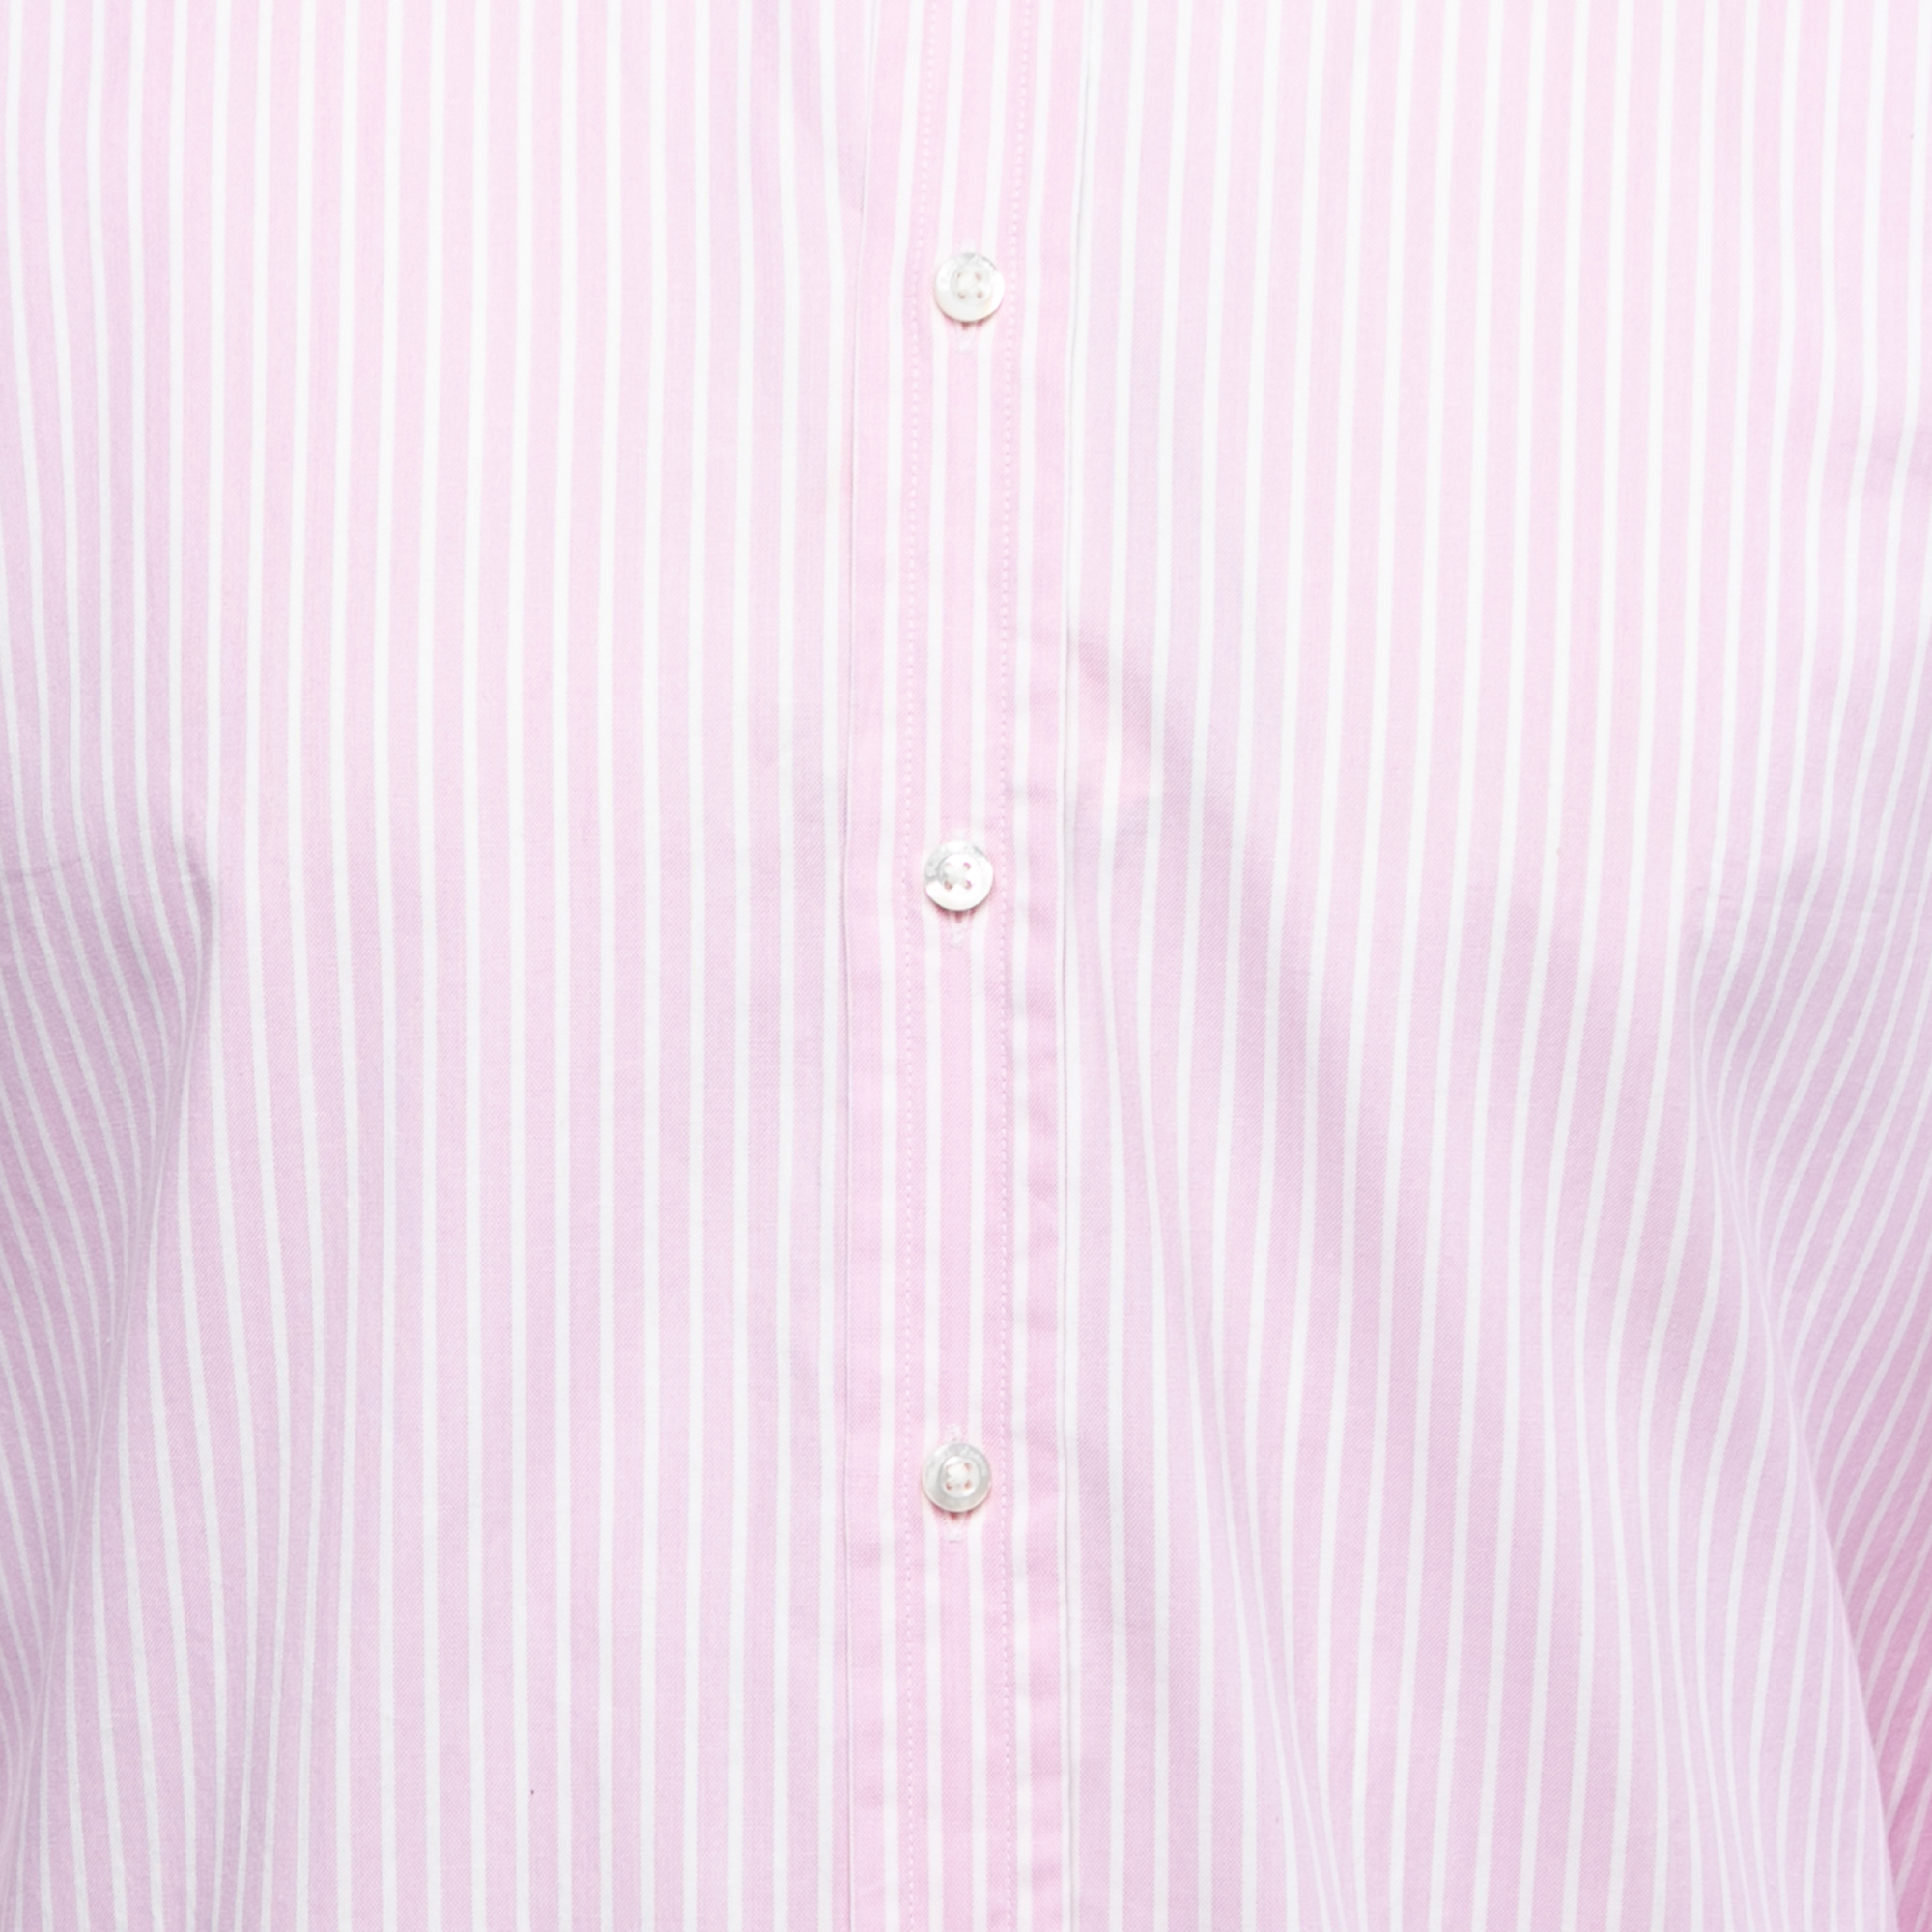 Ralph Lauren Purple Label Pink Striped Cotton Button Front Shirt S